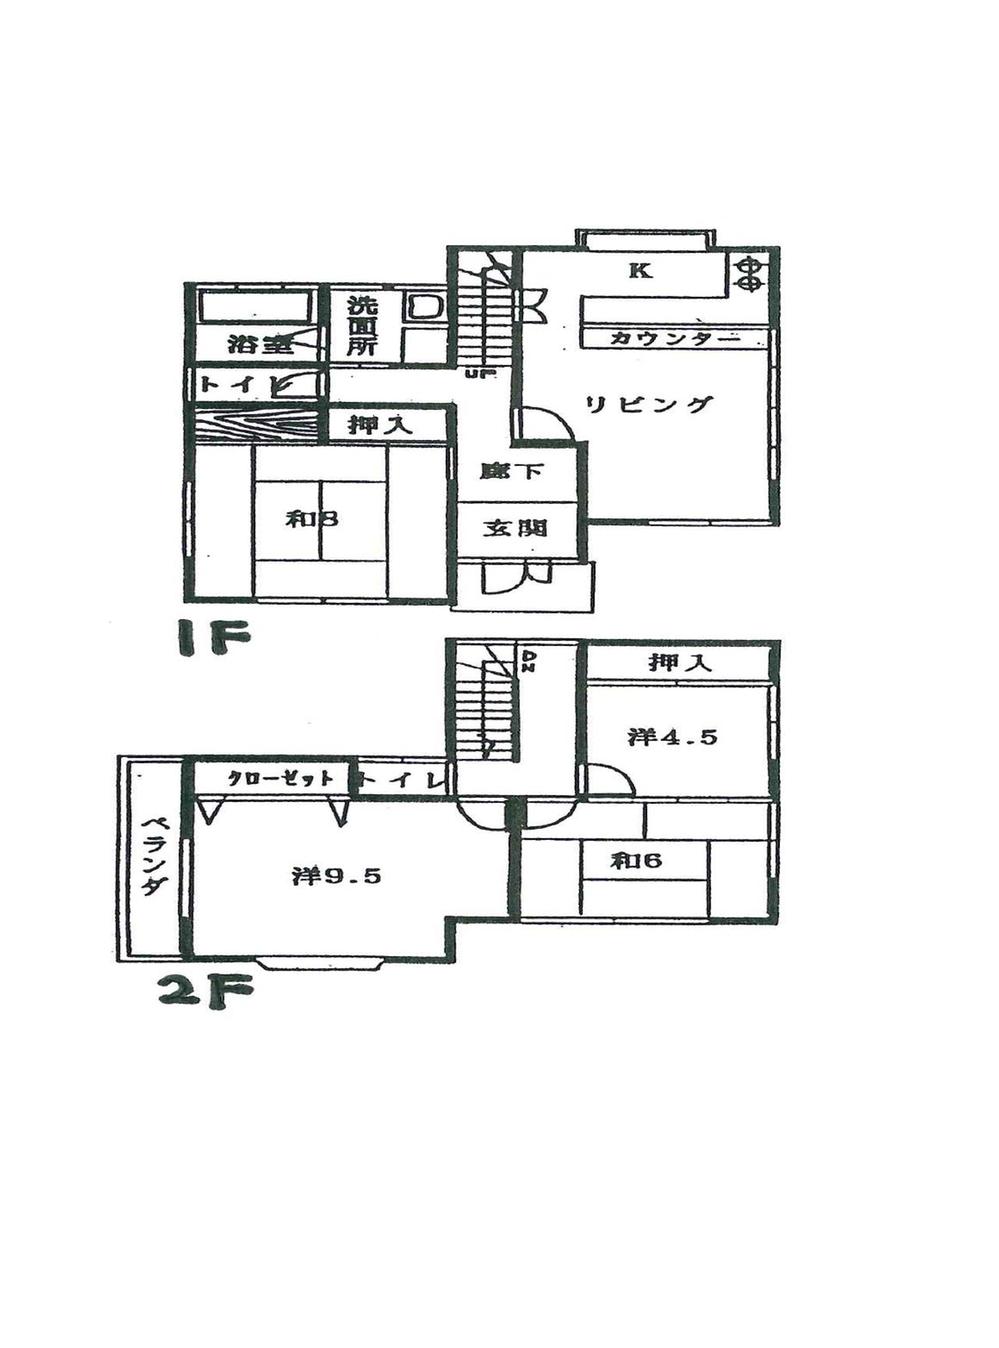 Floor plan. 8.8 million yen, 4LDK, Land area 229.24 sq m , Building area 102.45 sq m